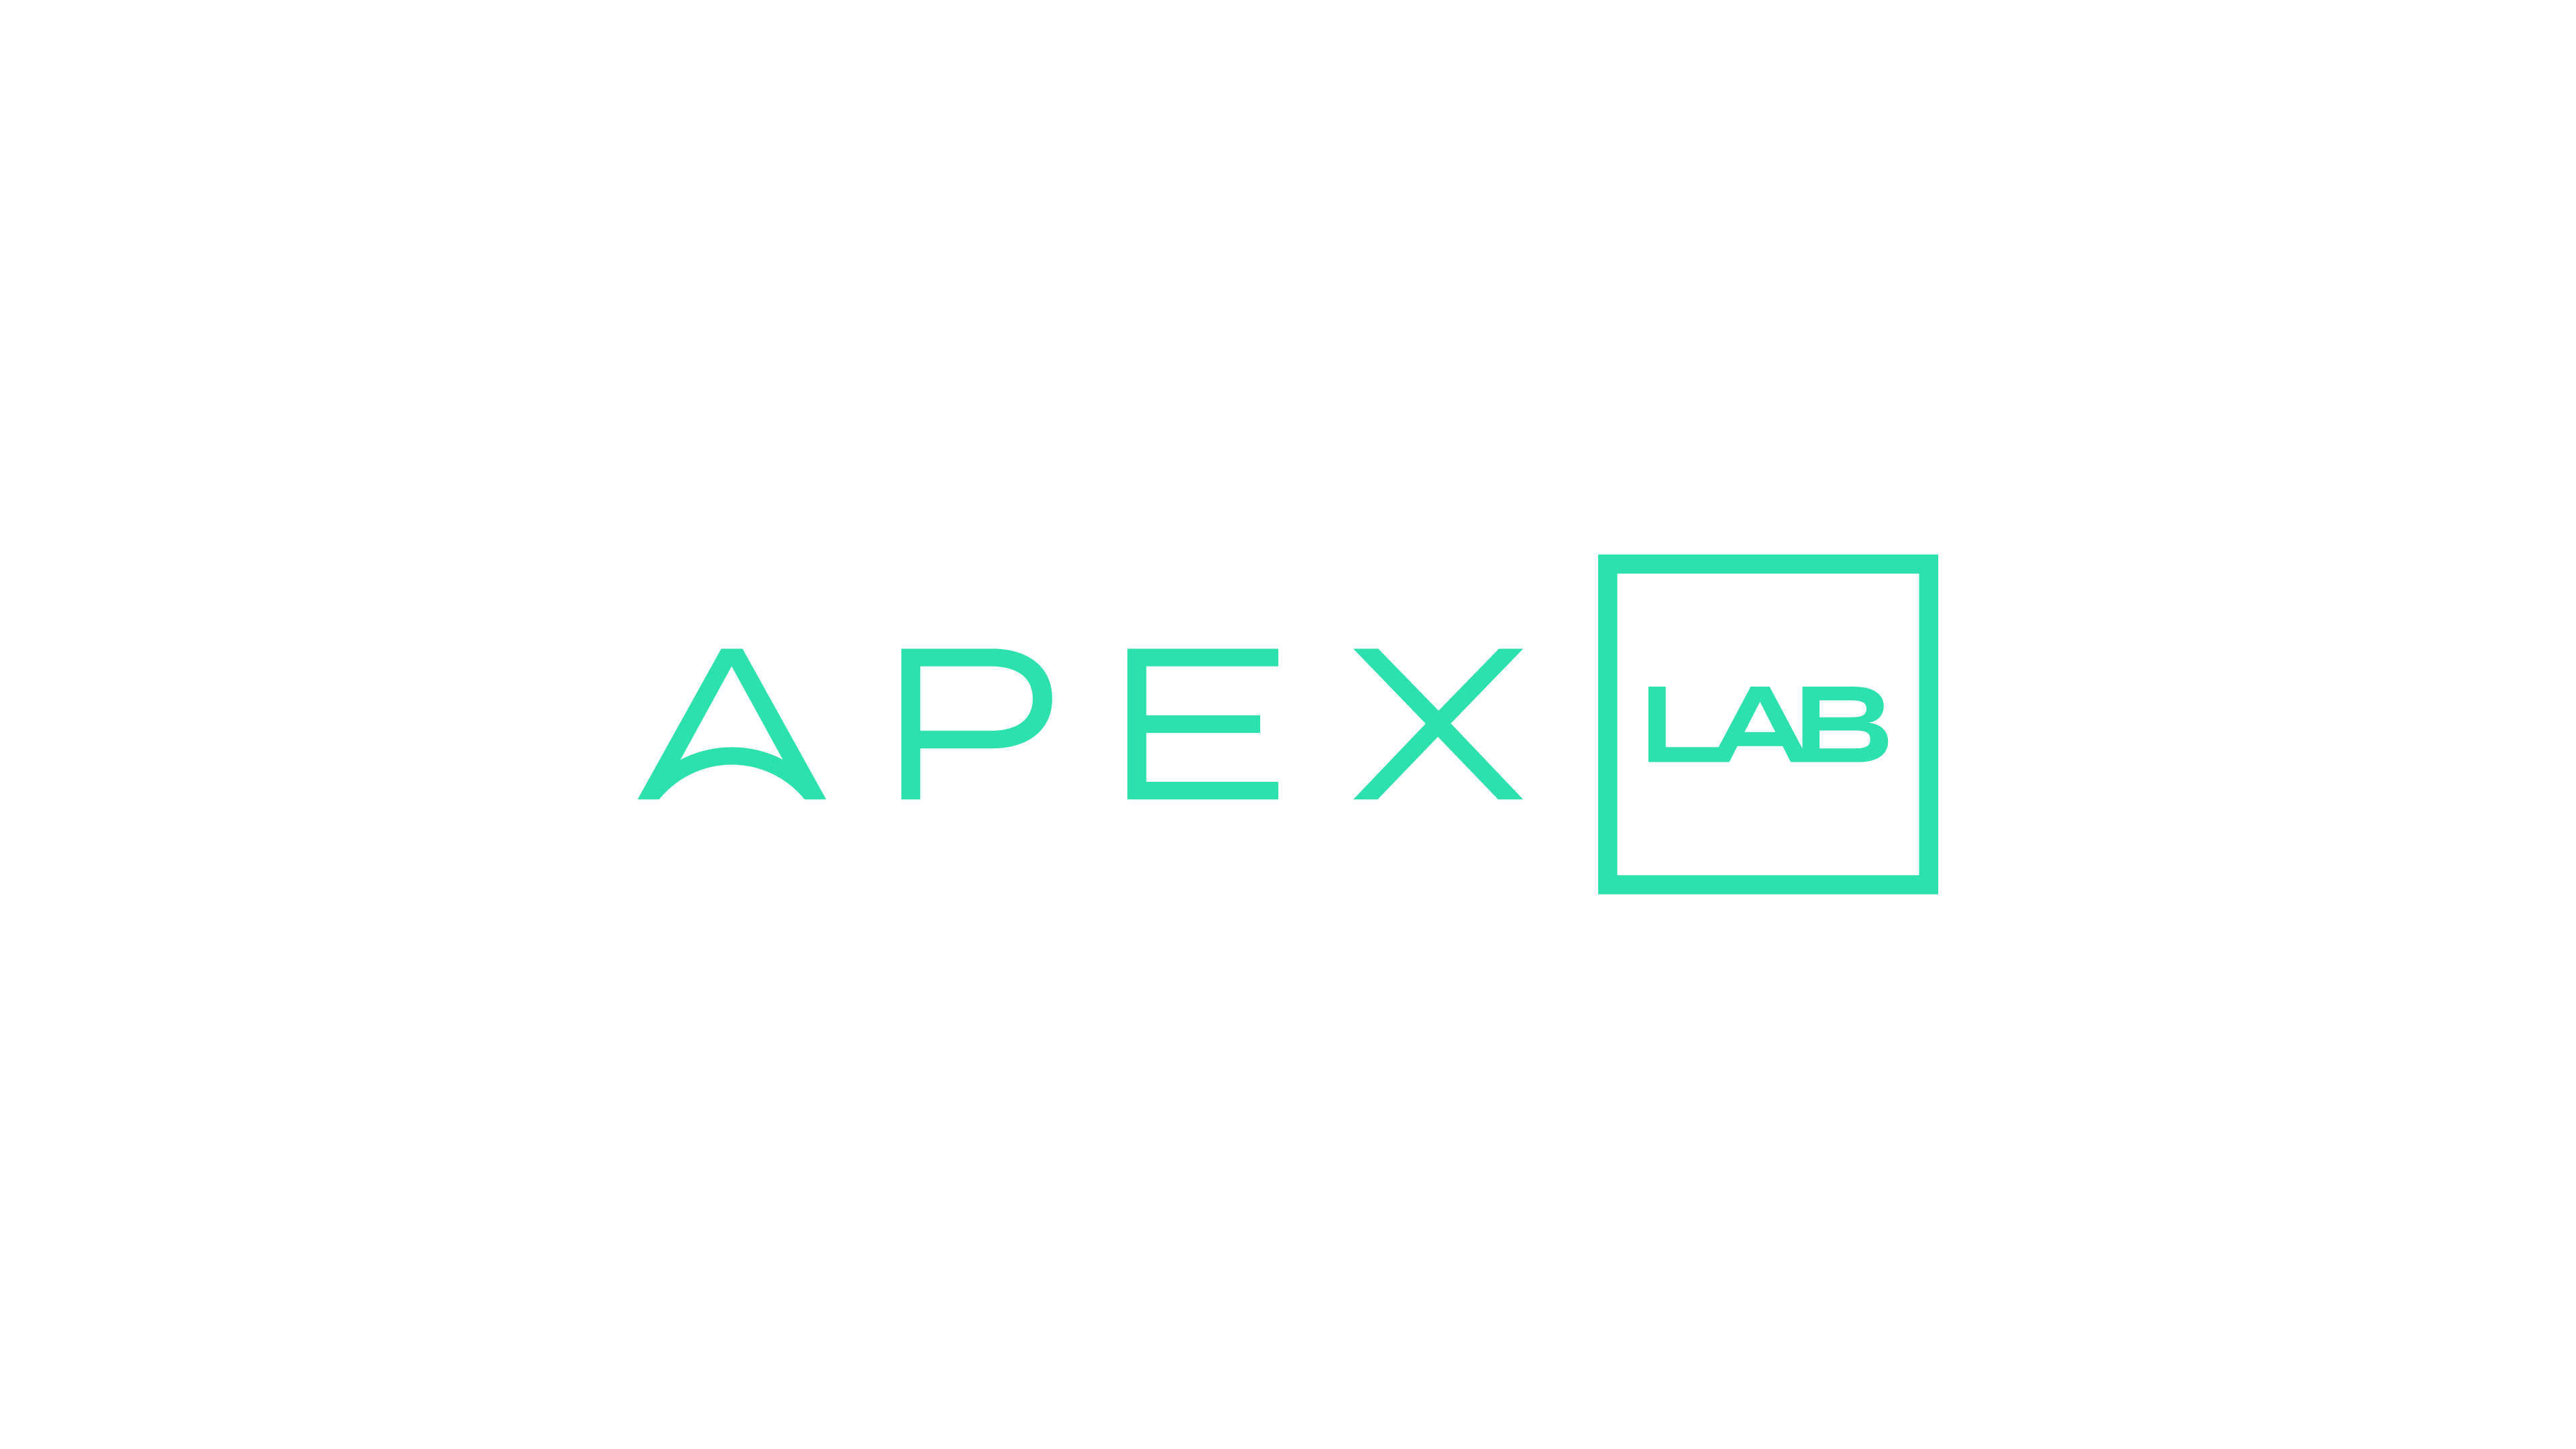 Apex lab